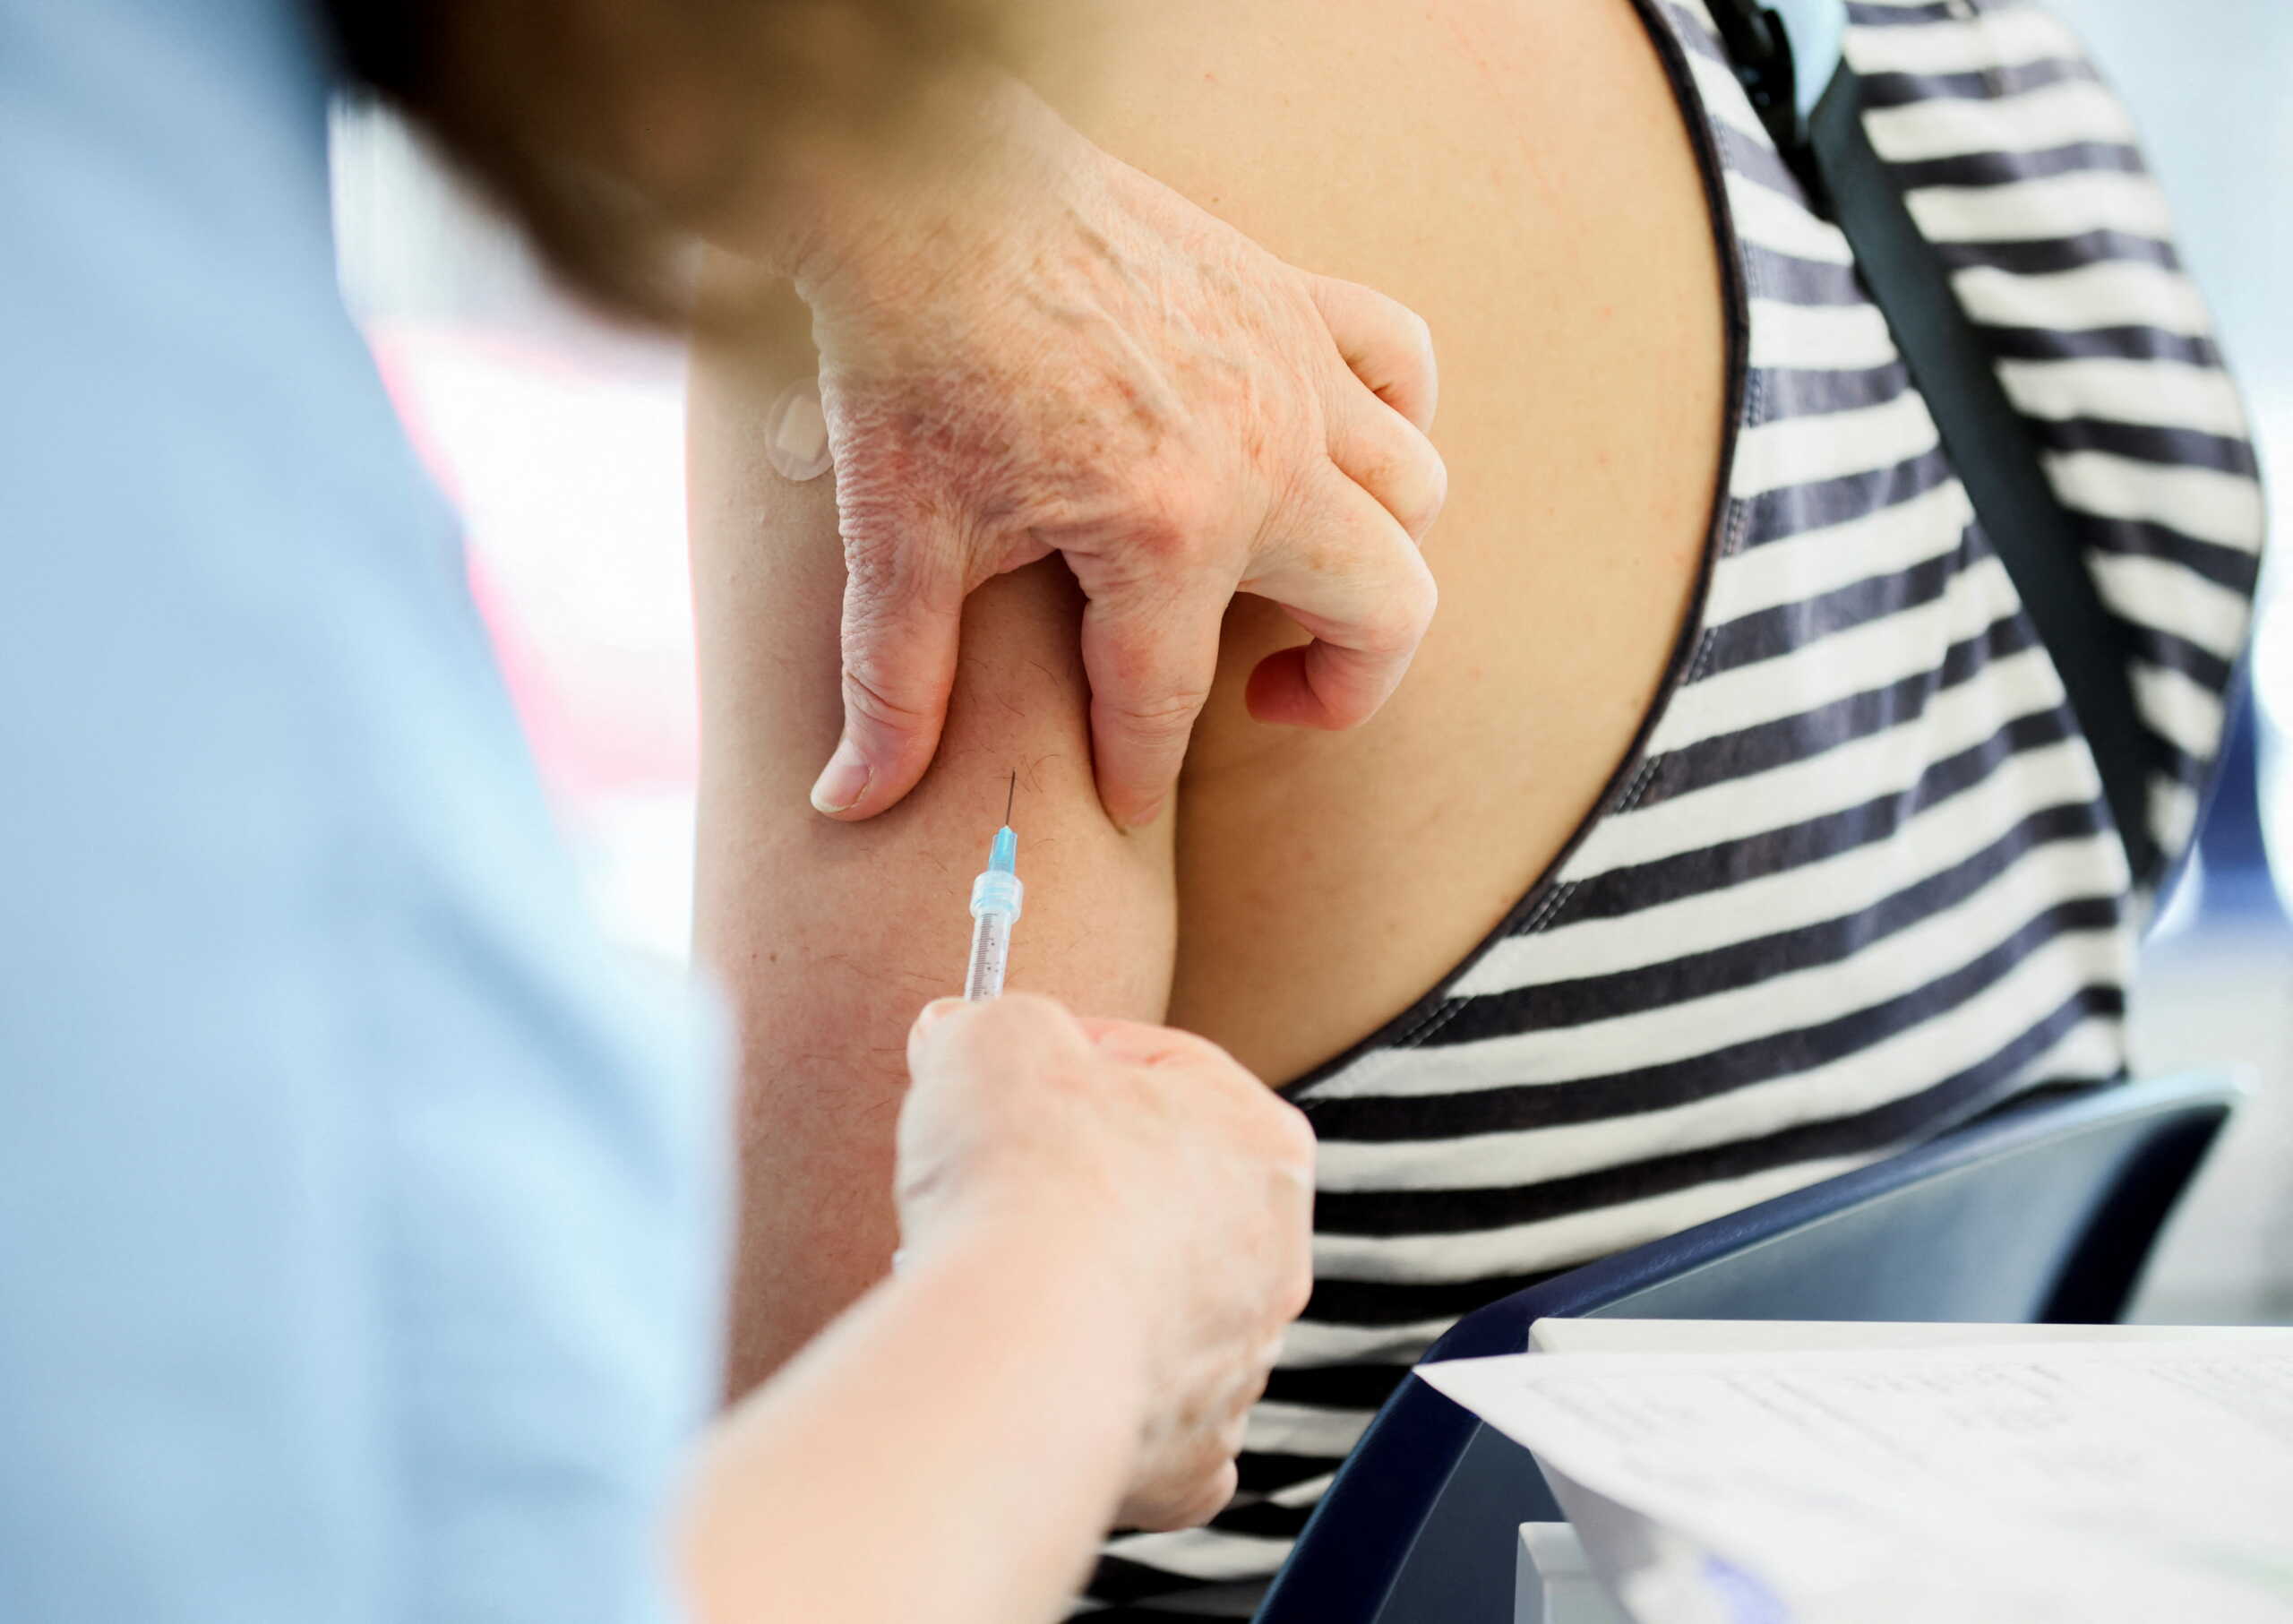 Τα εμβόλια κορονοϊού επηρεάζουν την περίοδο των γυναικών – Τι δείχνει νέα μελέτη